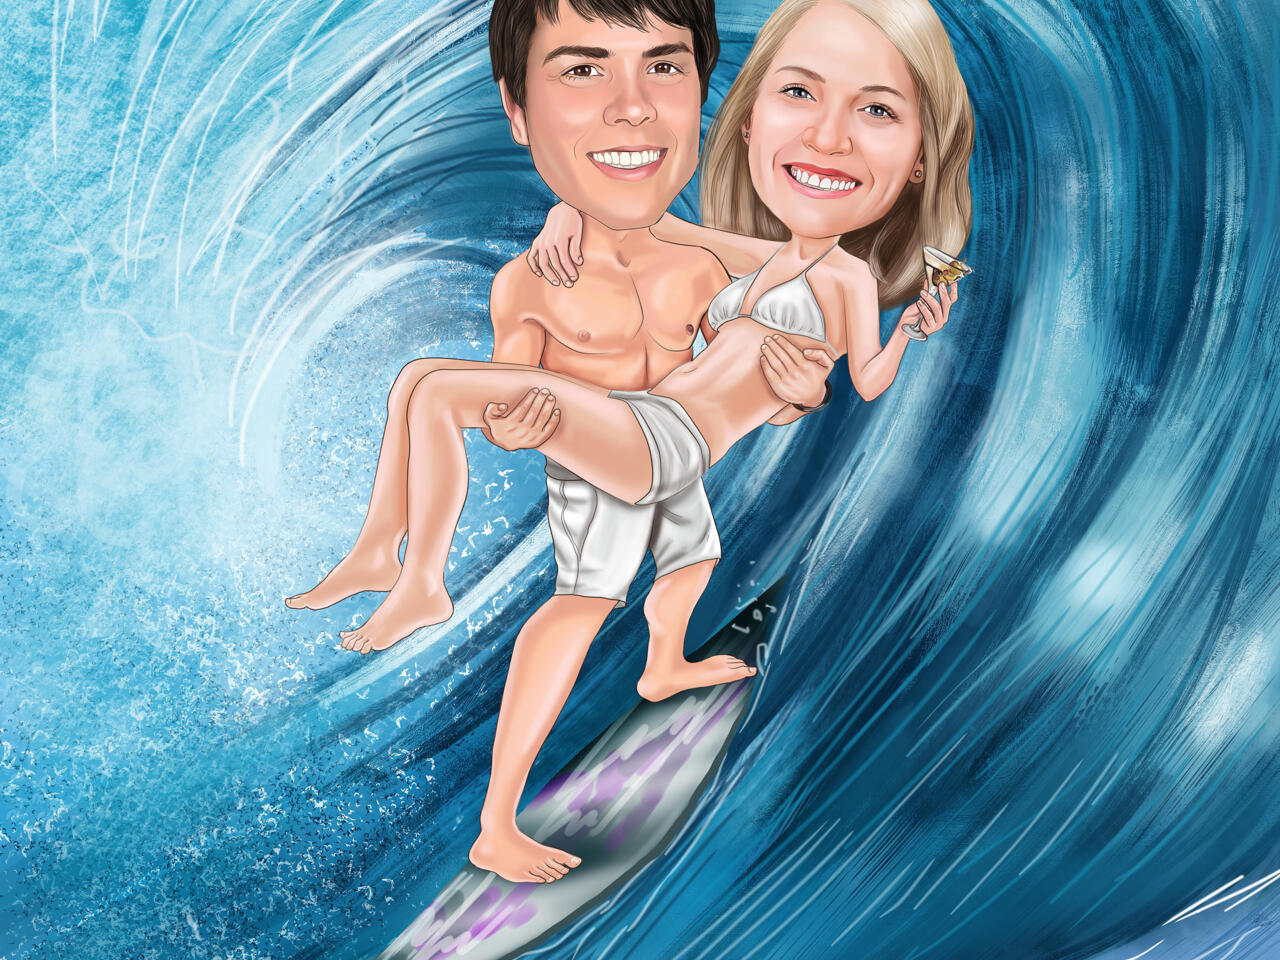 La vague et le surfer